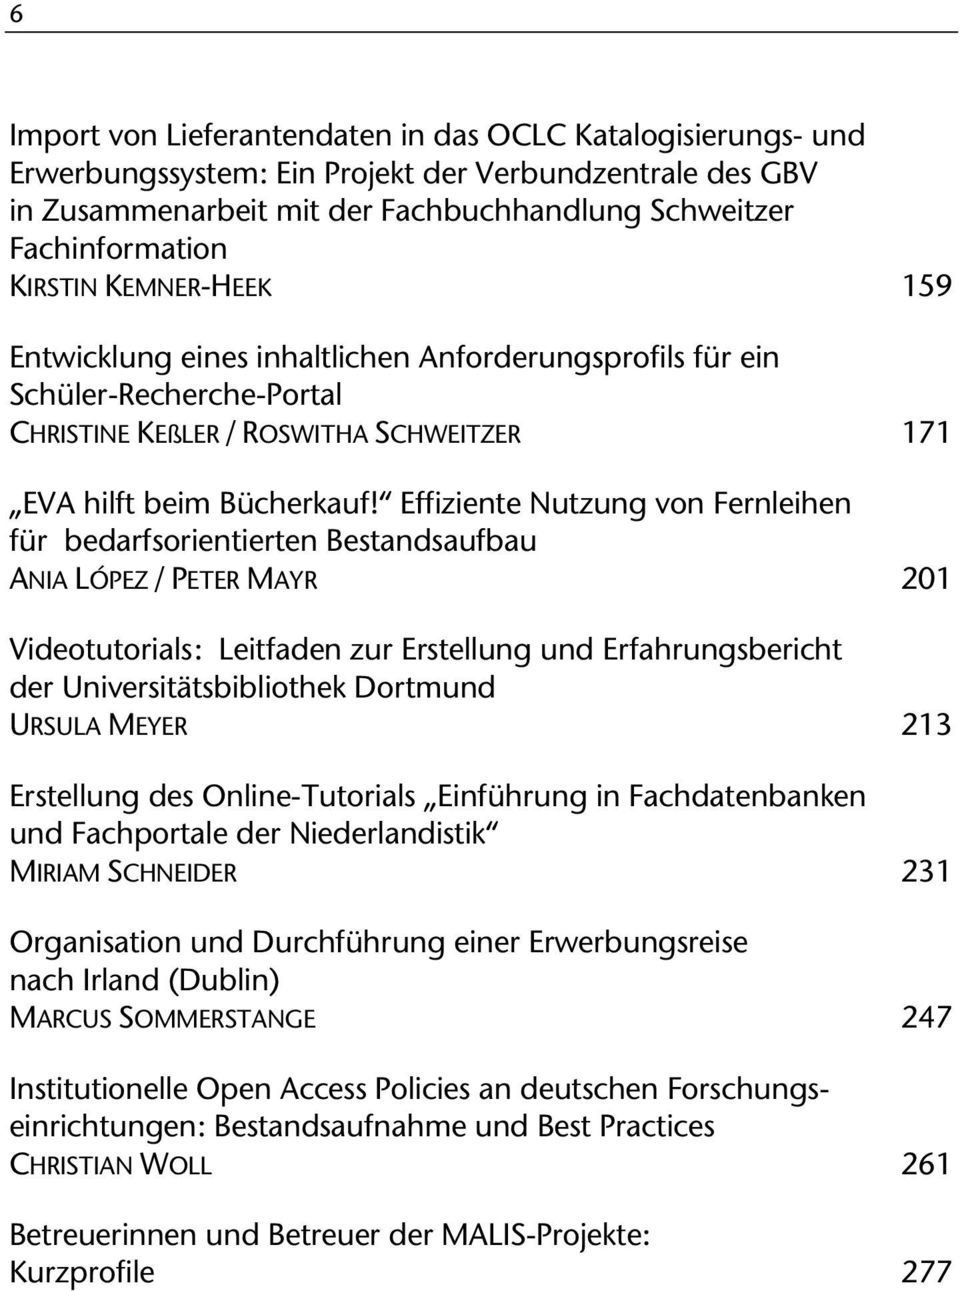 Effiziente Nutzung von Fernleihen für bedarfsorientierten Bestandsaufbau ANIA LÓPEZ / PETER MAYR 201 Videotutorials: Leitfaden zur Erstellung und Erfahrungsbericht der Universitätsbibliothek Dortmund